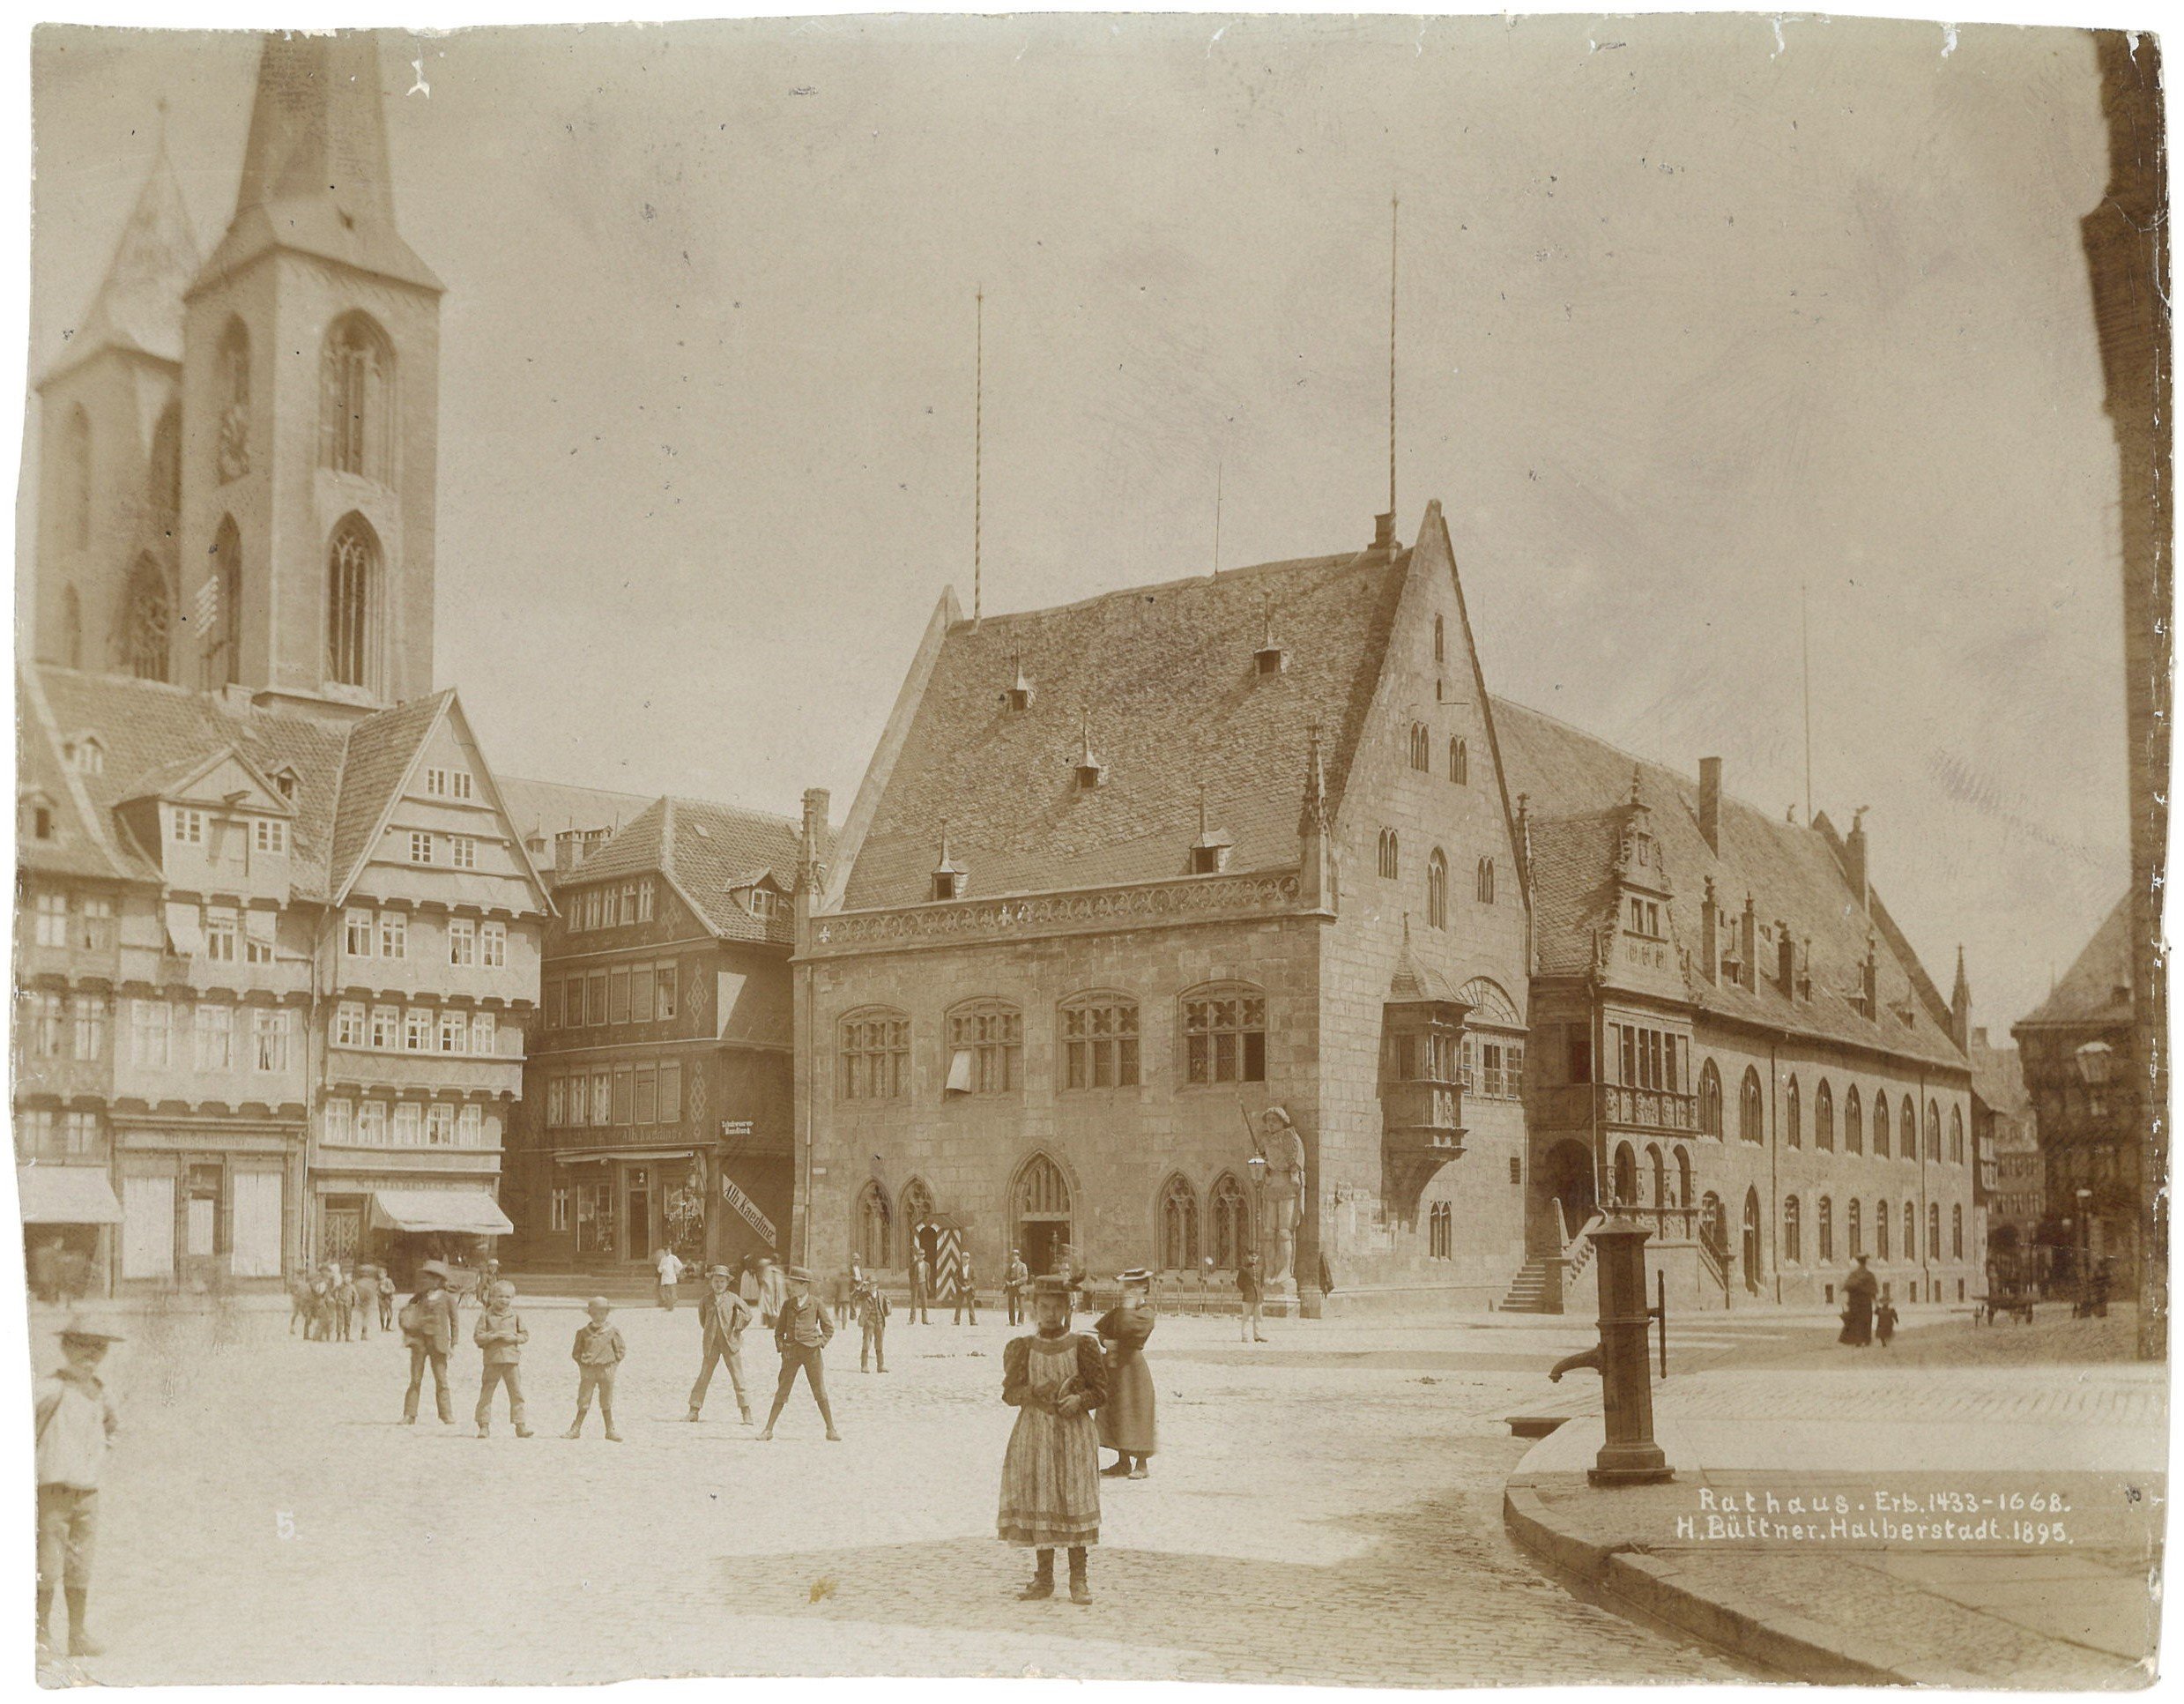 Halberstadt: Rathaus von Nordosten (Landesgeschichtliche Vereinigung für die Mark Brandenburg e.V., Archiv CC BY)